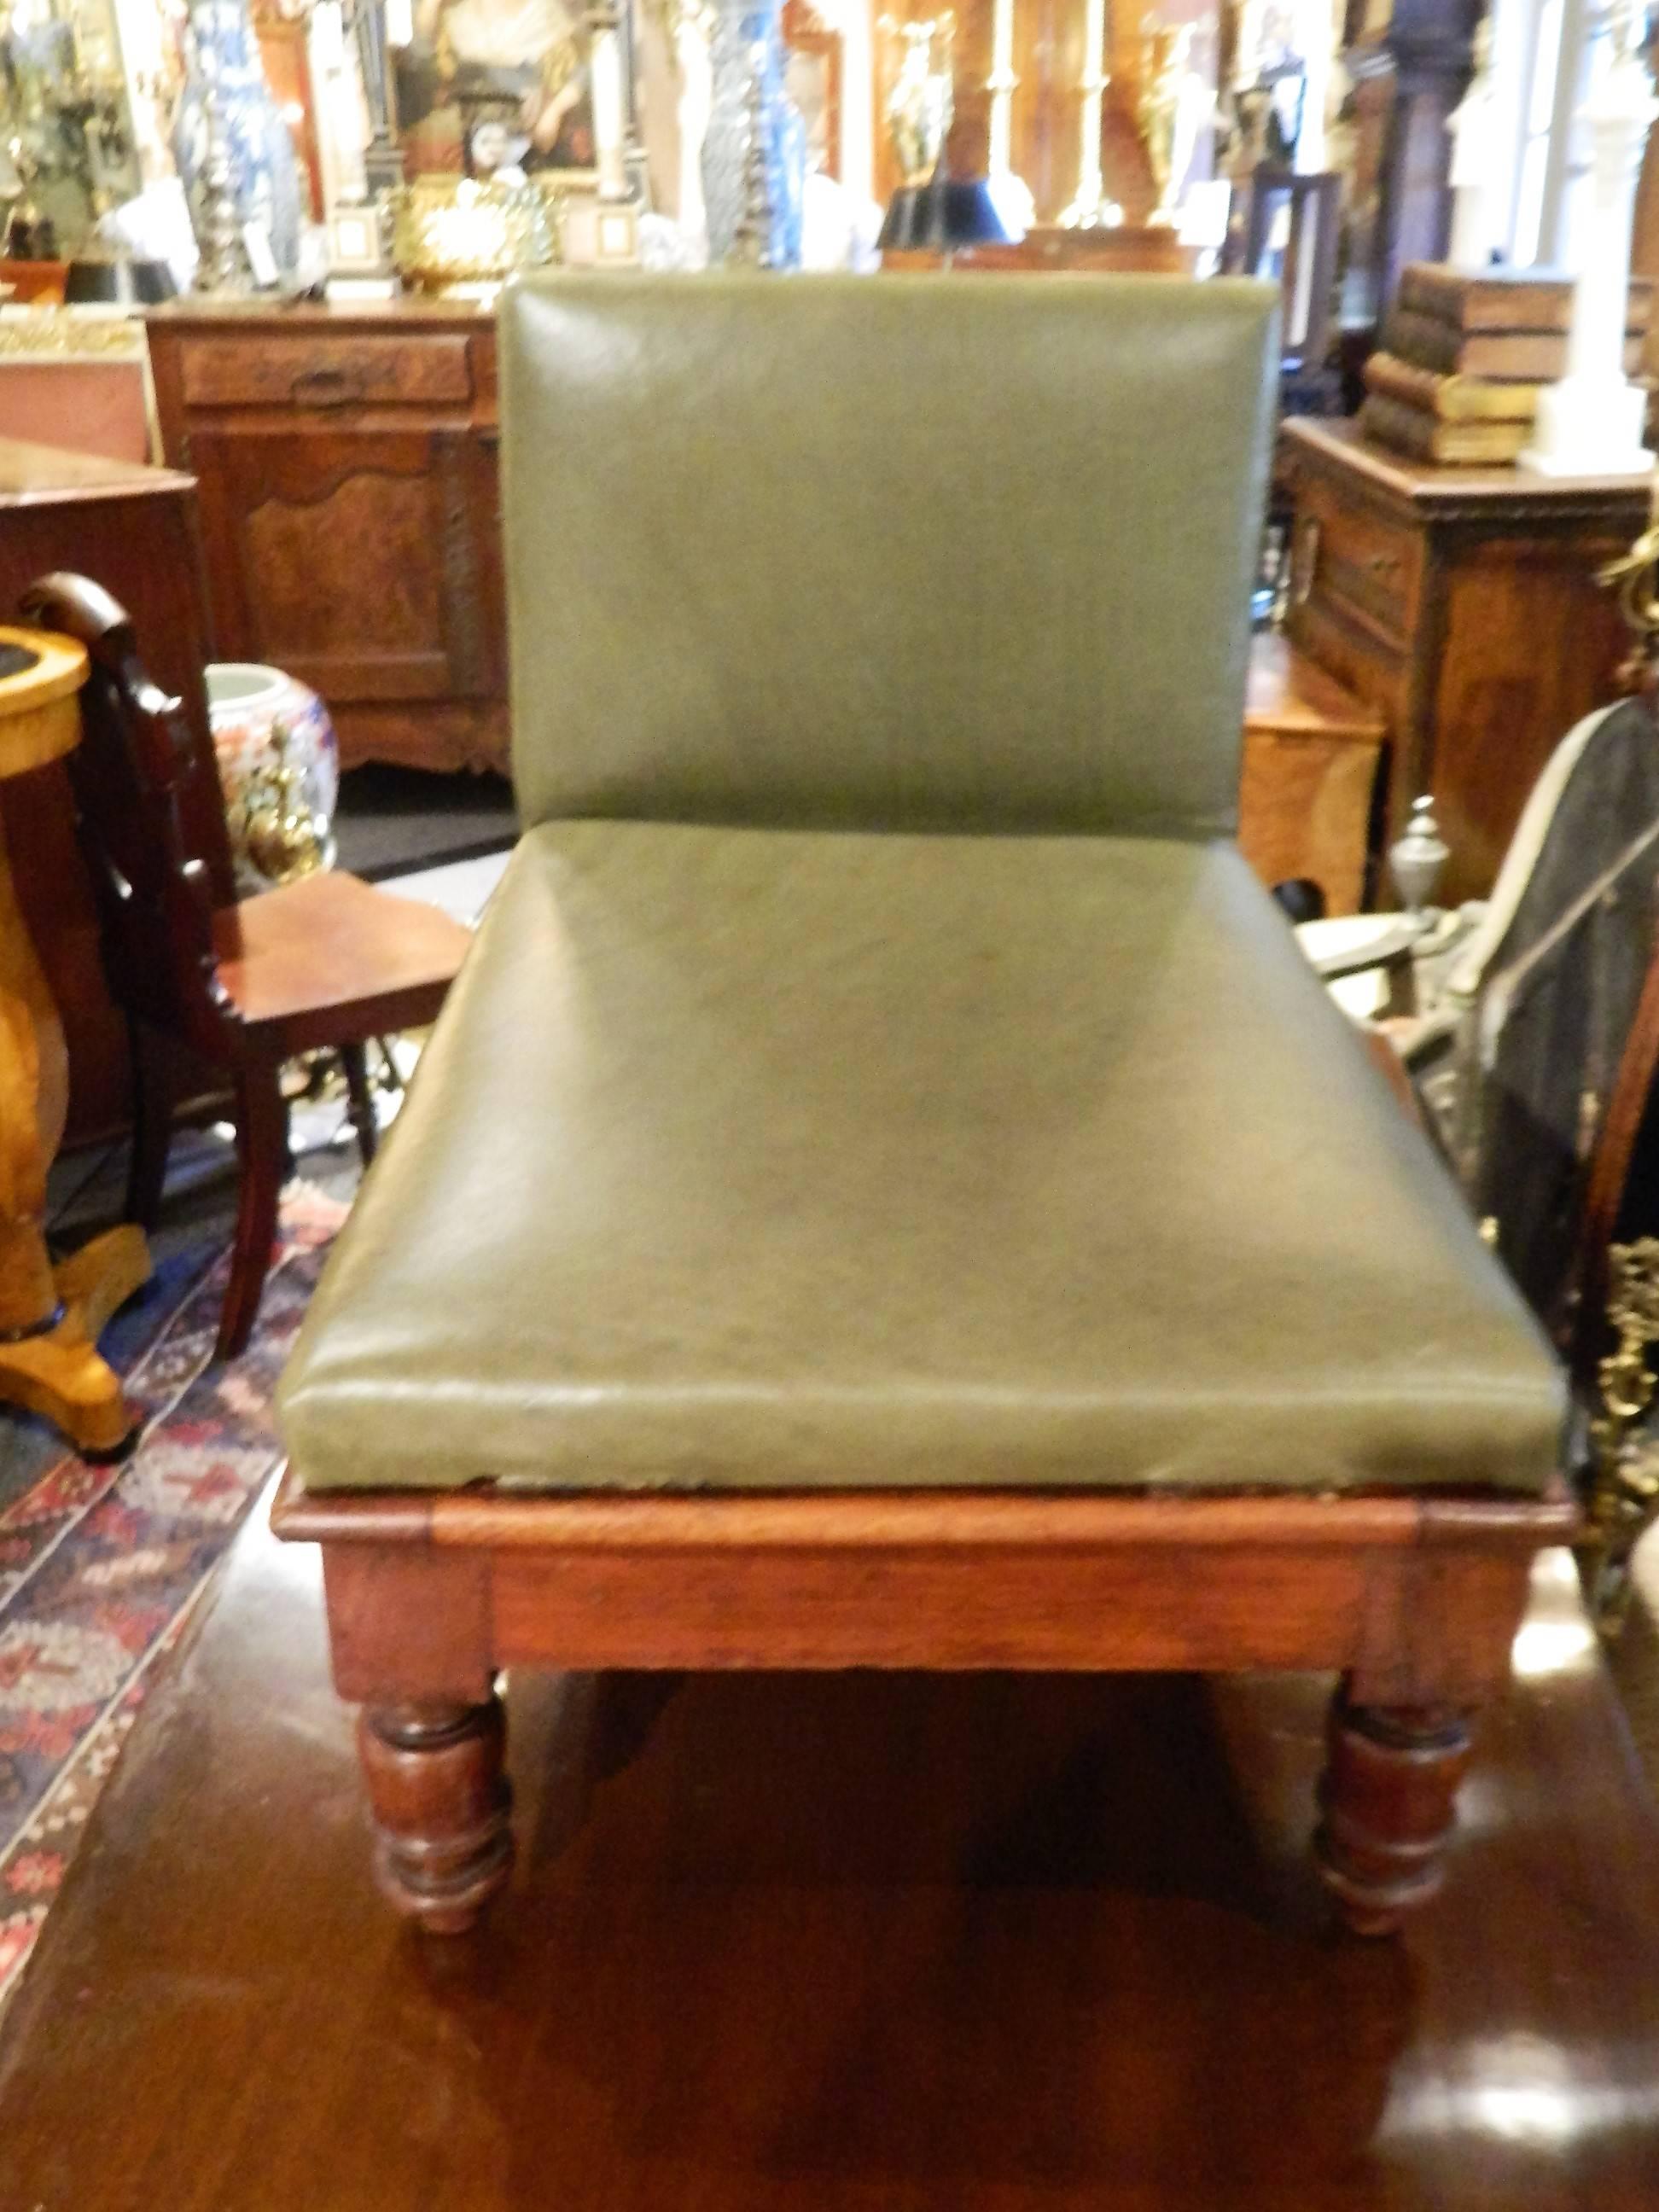 upholstered step stool